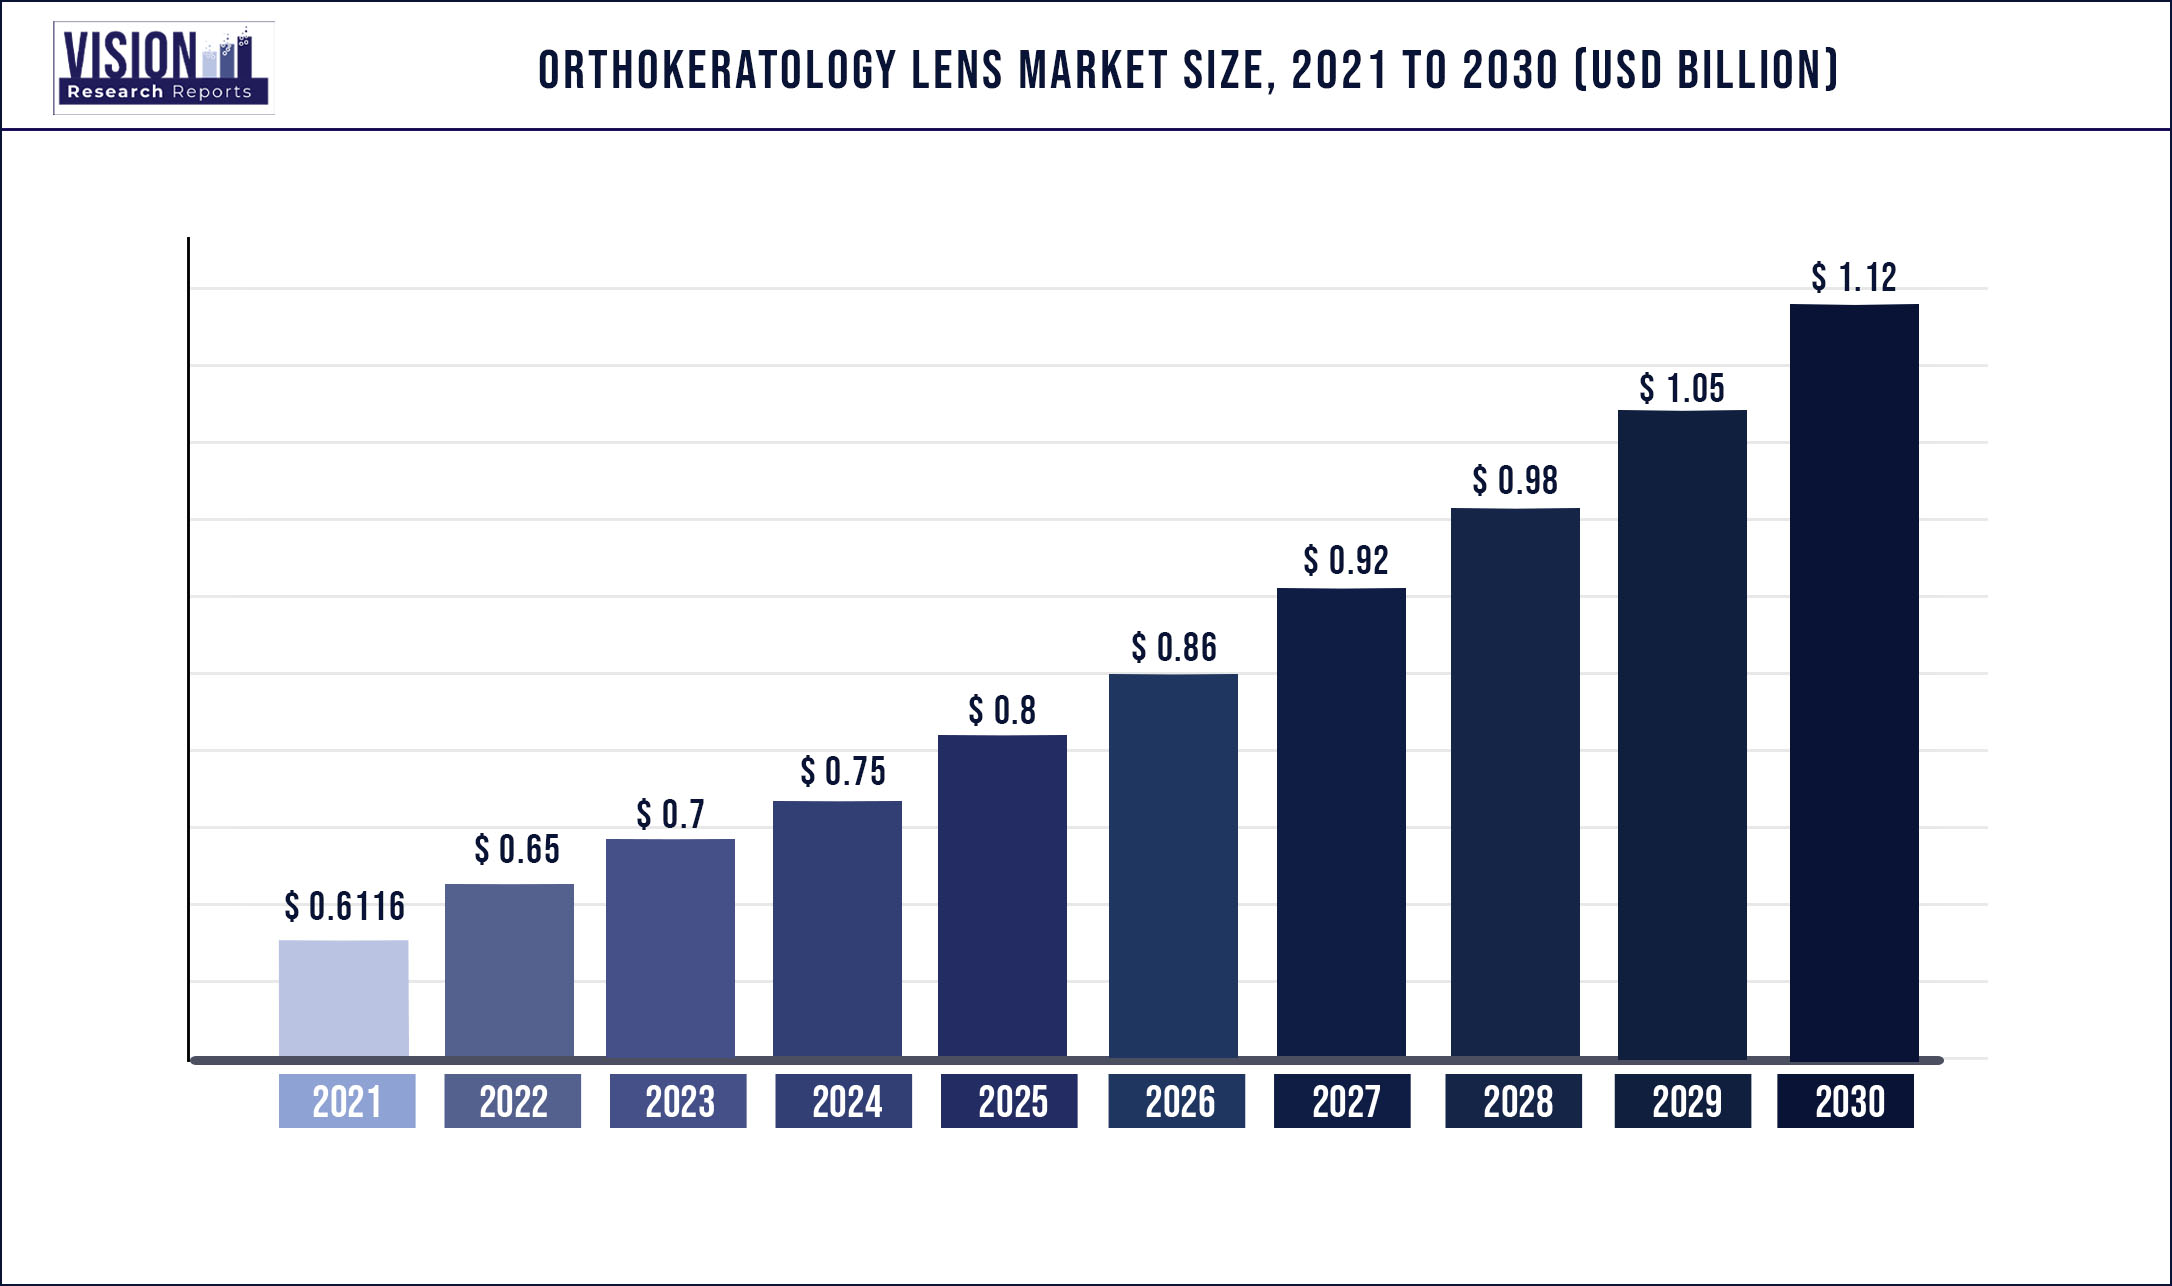 Orthokeratology Lens Market Size 2021 to 2030